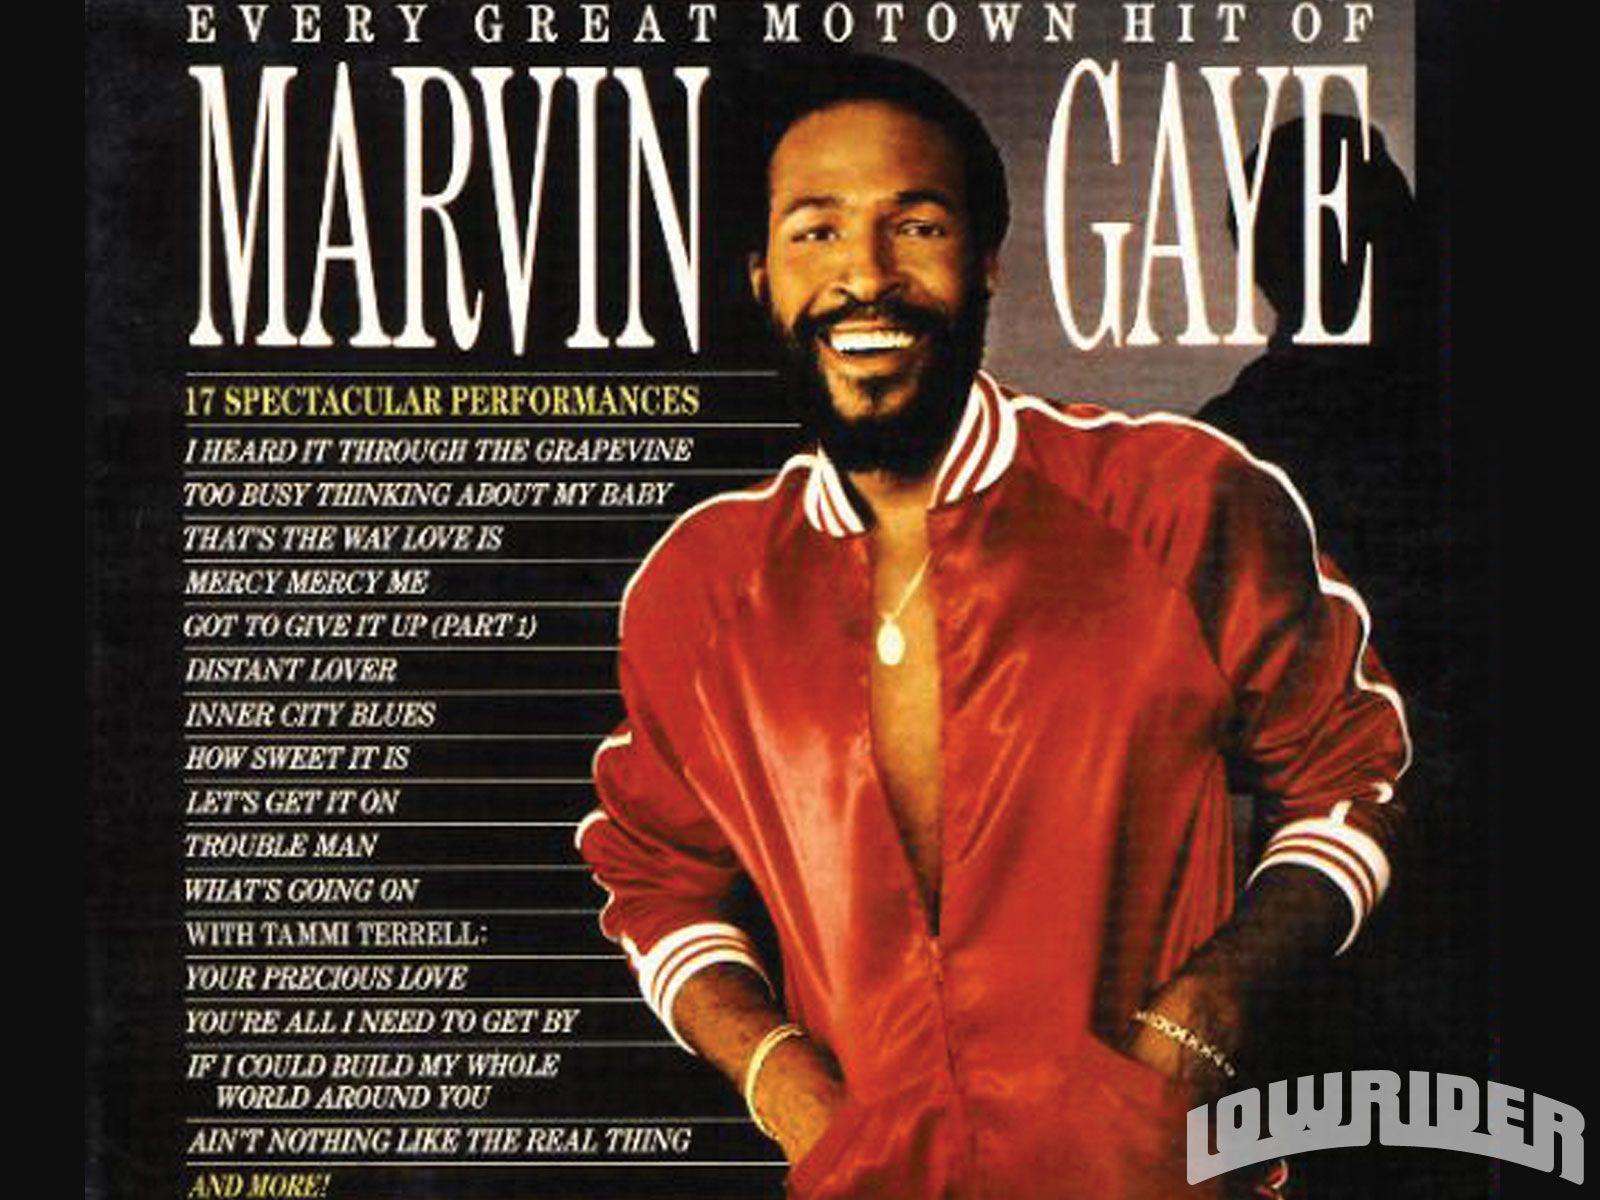 Marvin Gaye Motown Hit Photo 1